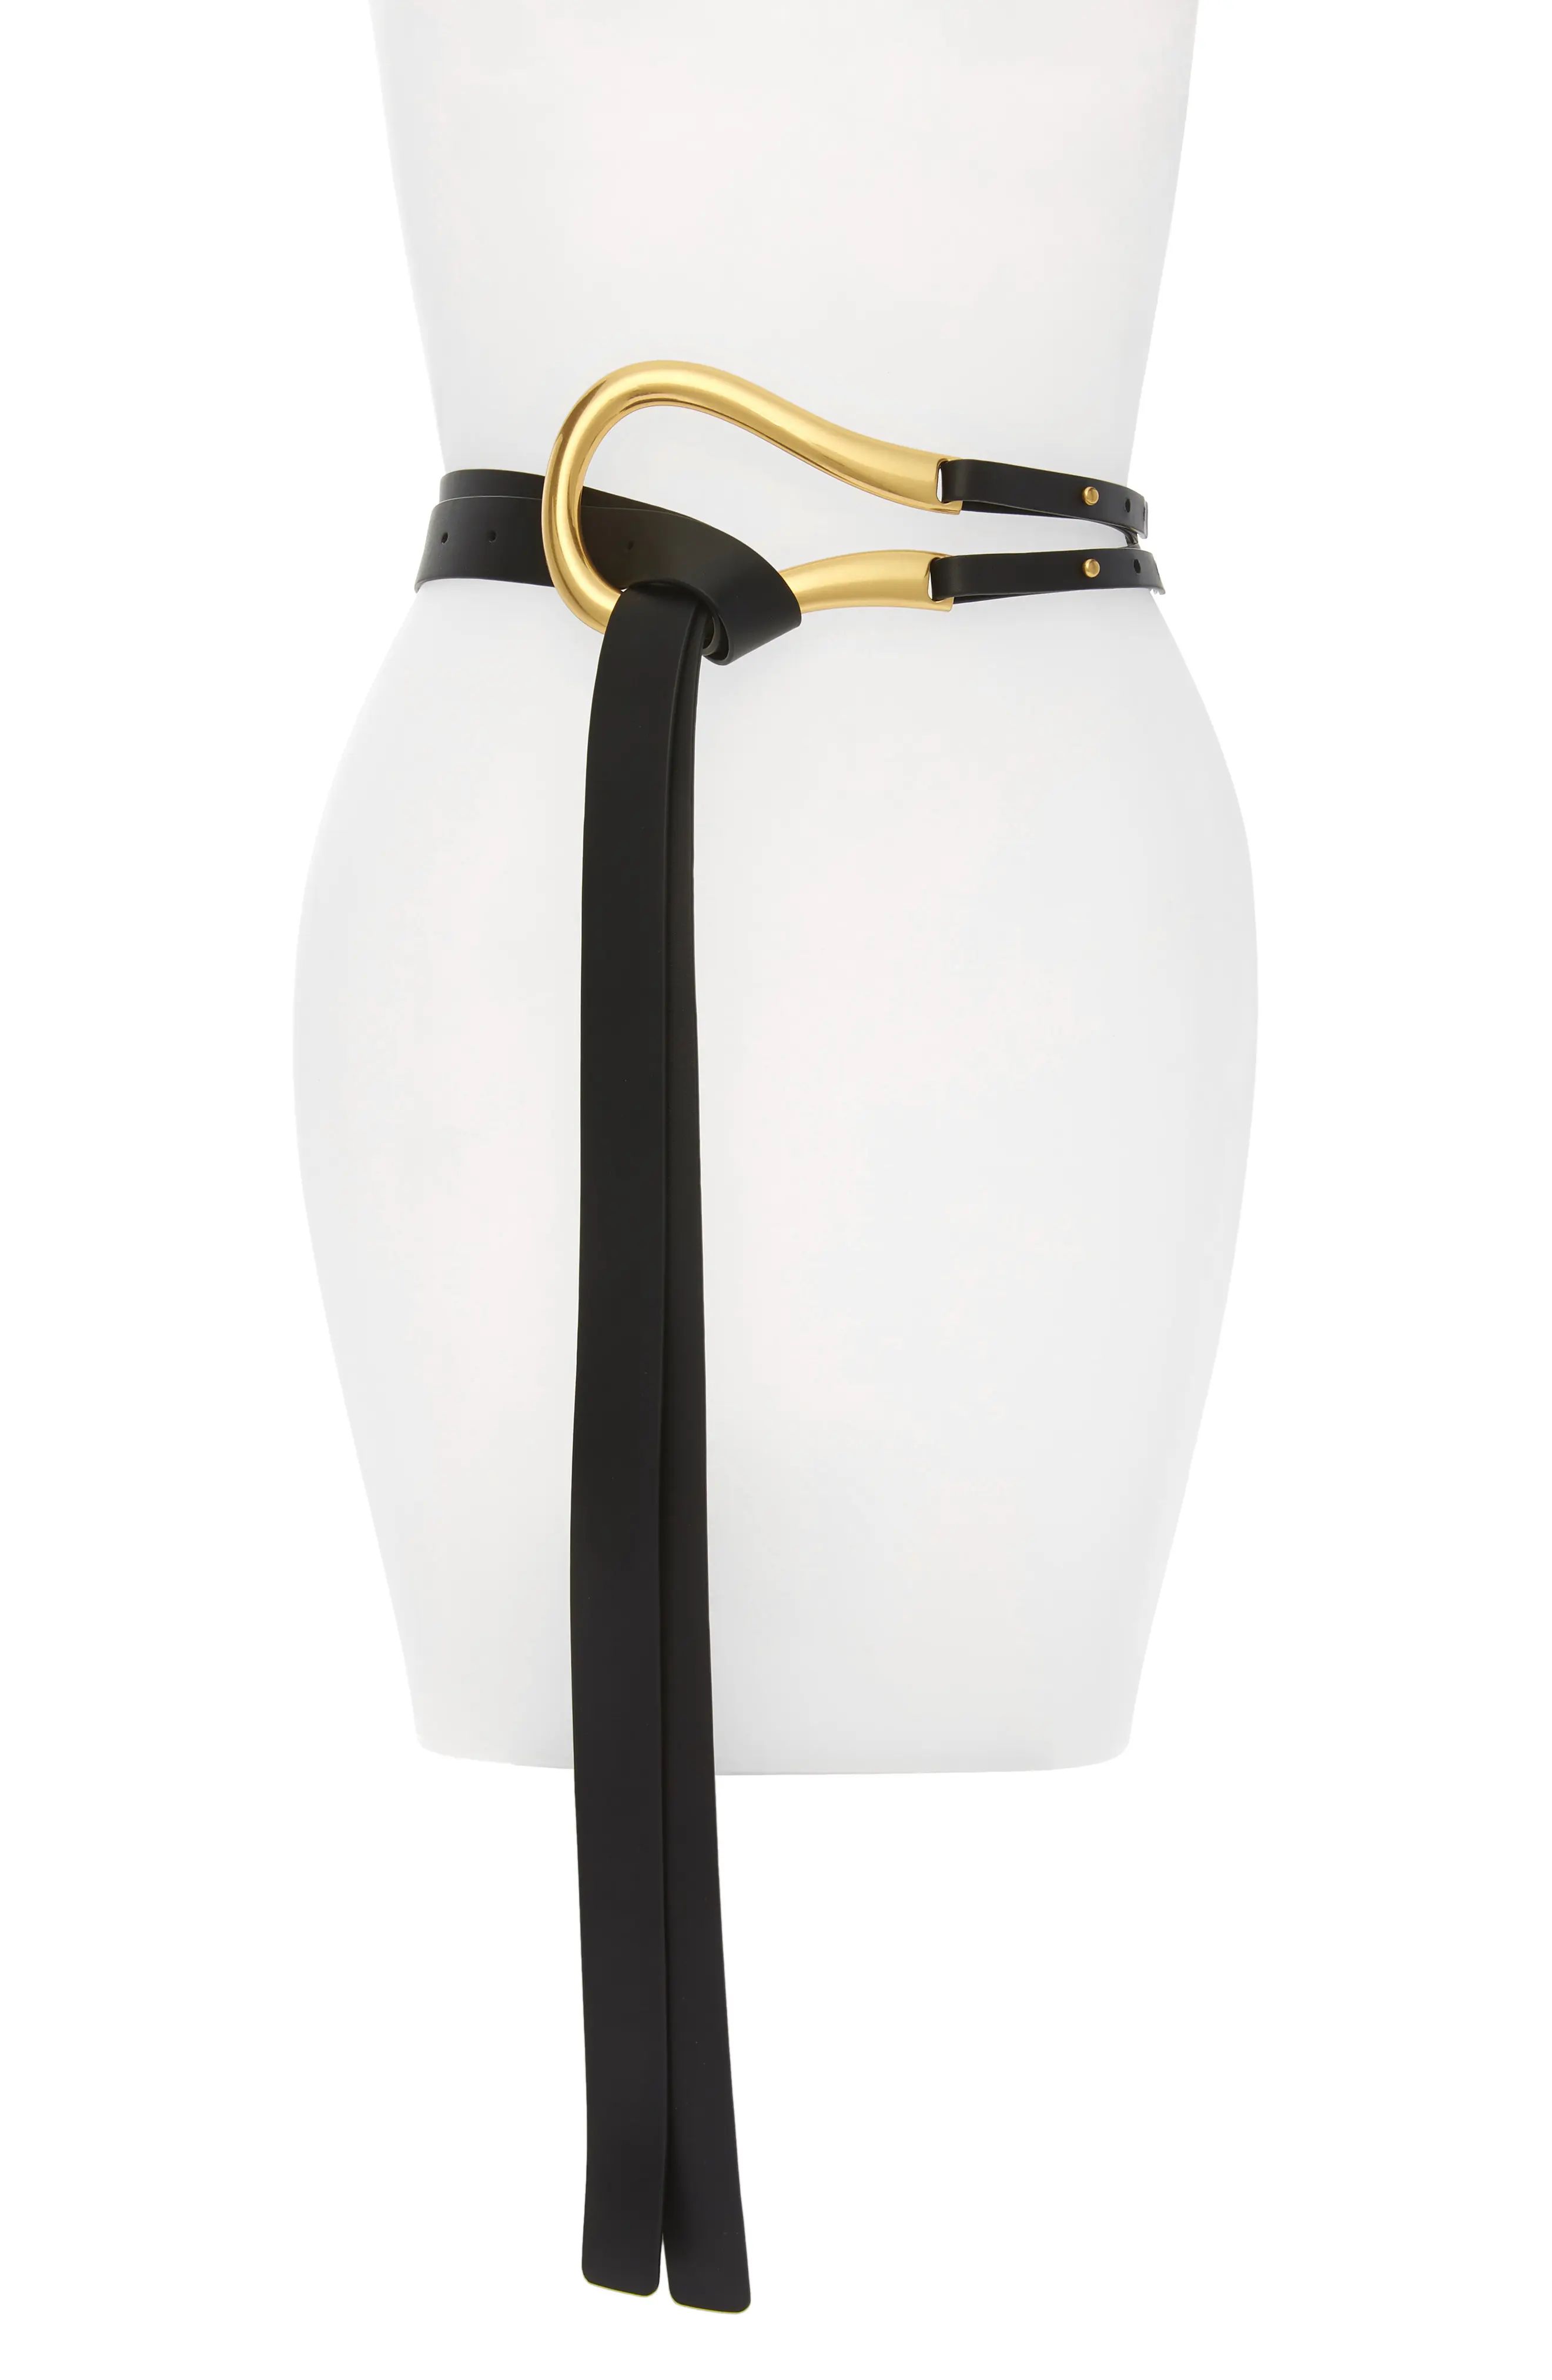 Bottega Veneta Leather Belt, Size Large in Black/Gold at Nordstrom | Nordstrom